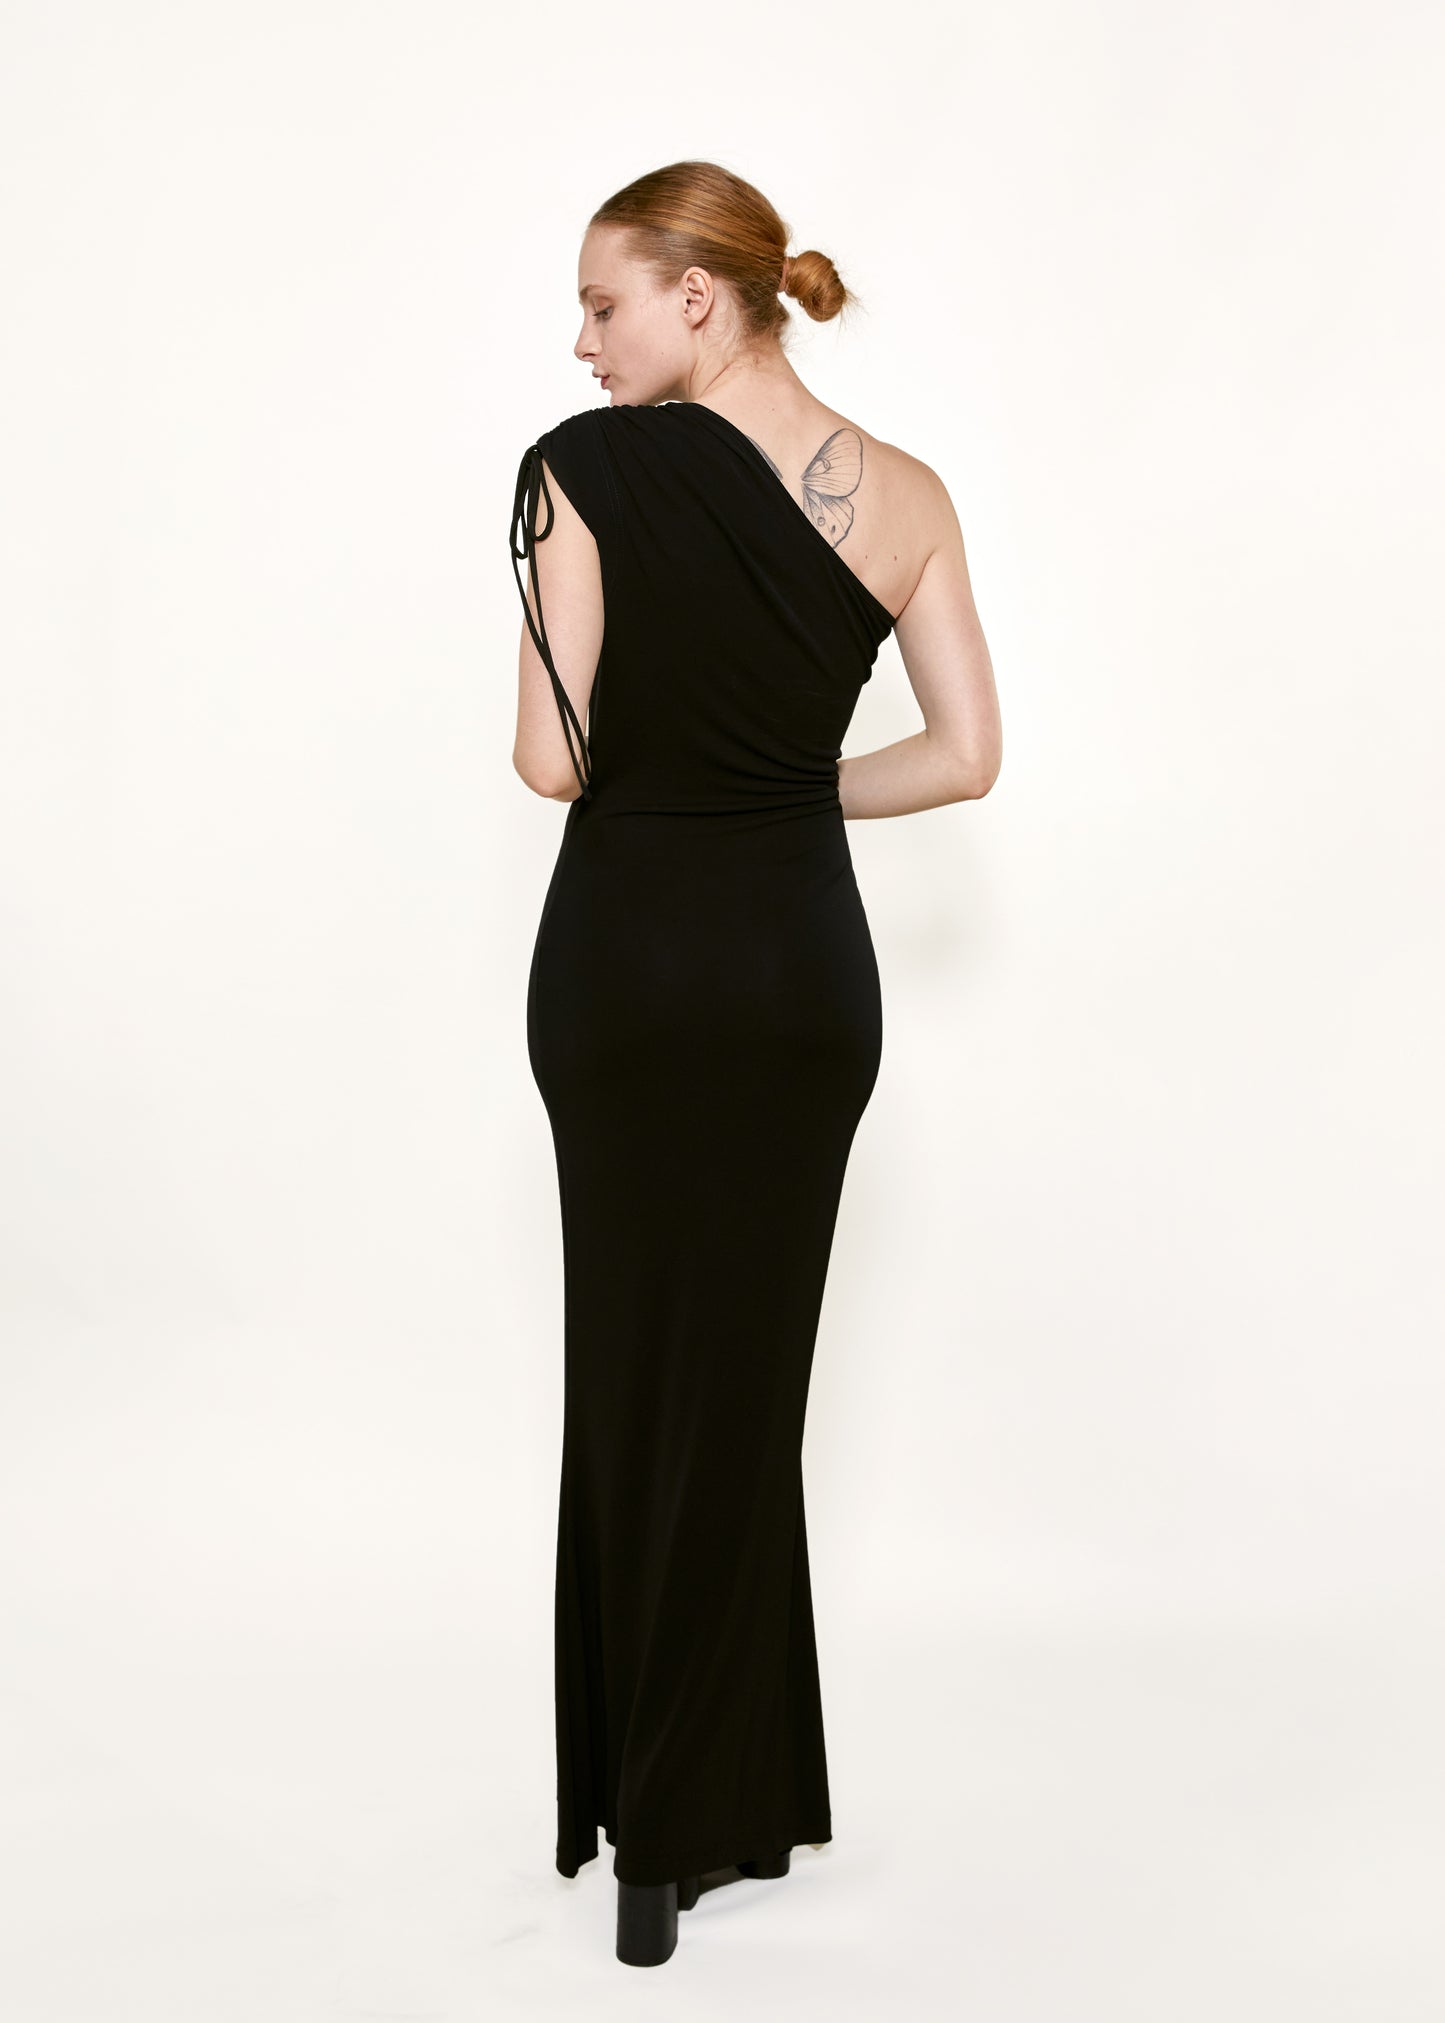 Vivienne Westwood Gold Label Black Jersey One Shoulder Dress